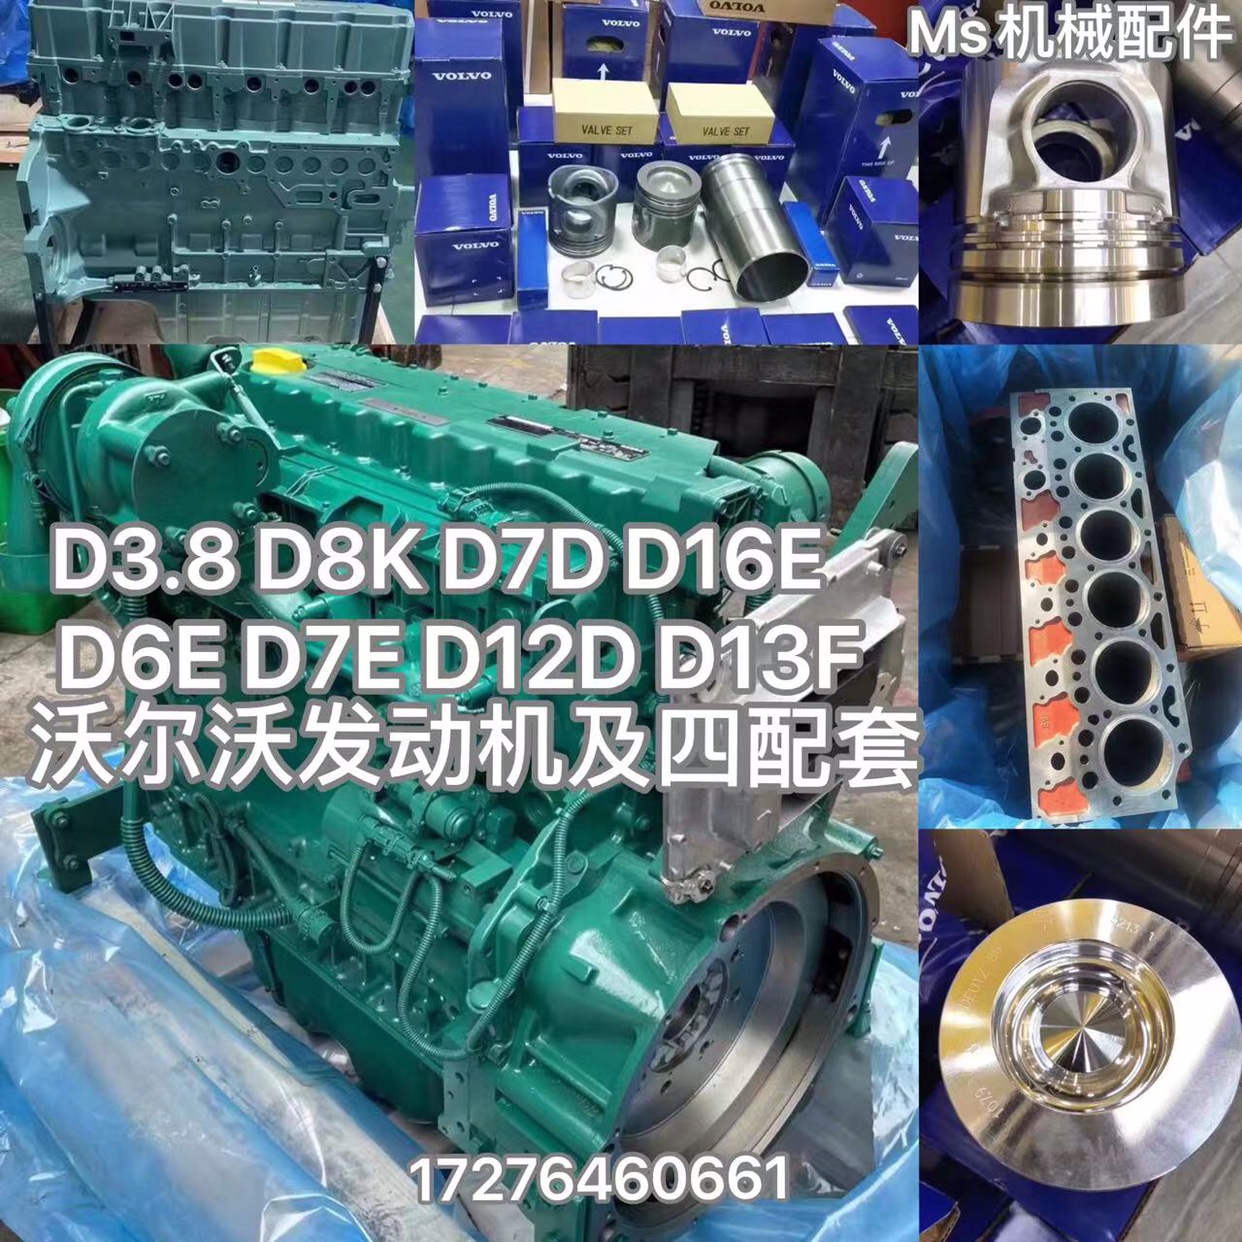 道依茨沃尔沃D3.8 D6E D7E D8K D12D D13F D16E发动机配件四配套